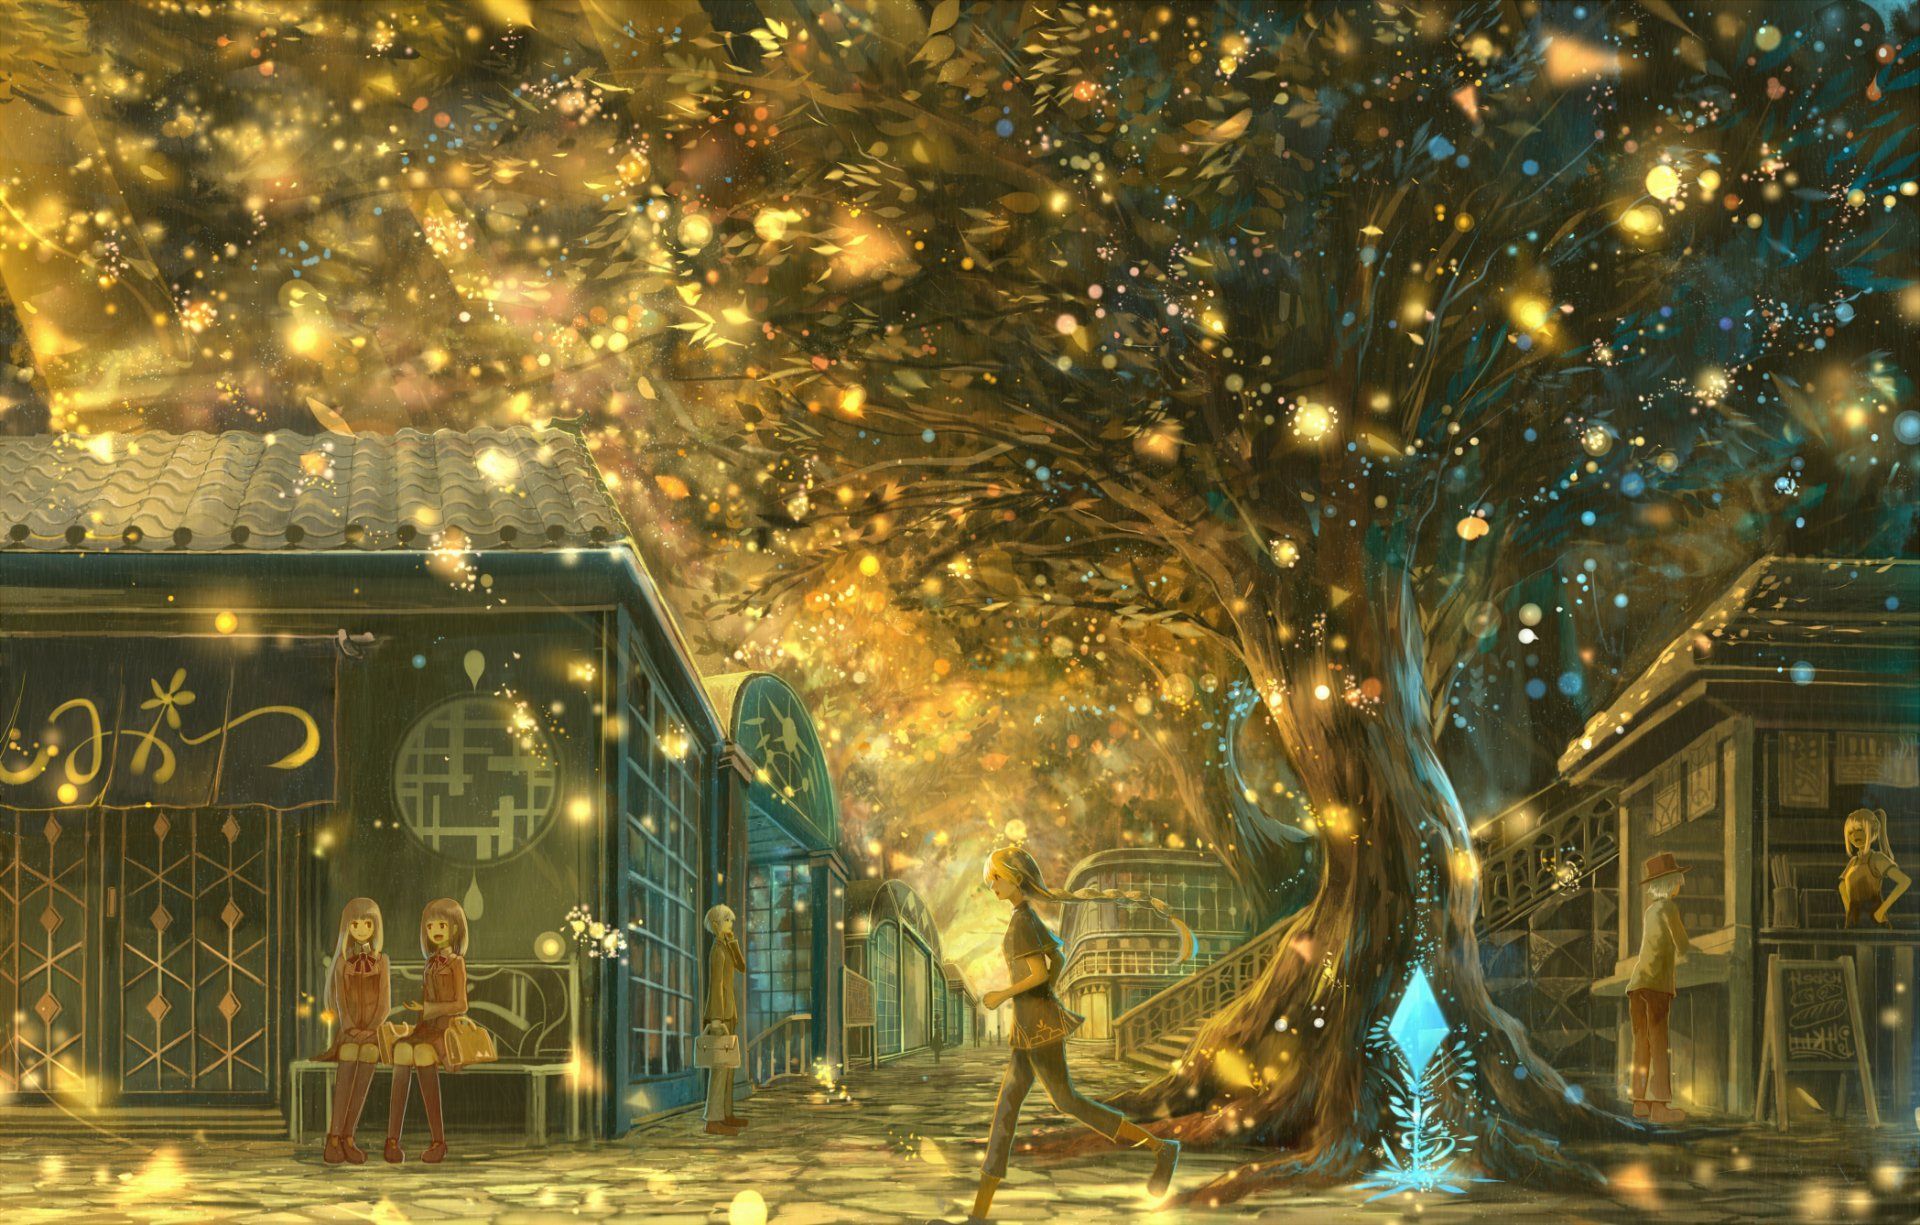 Anime Original Light Tree Magic Girl Landscape Wallpaper. Anime